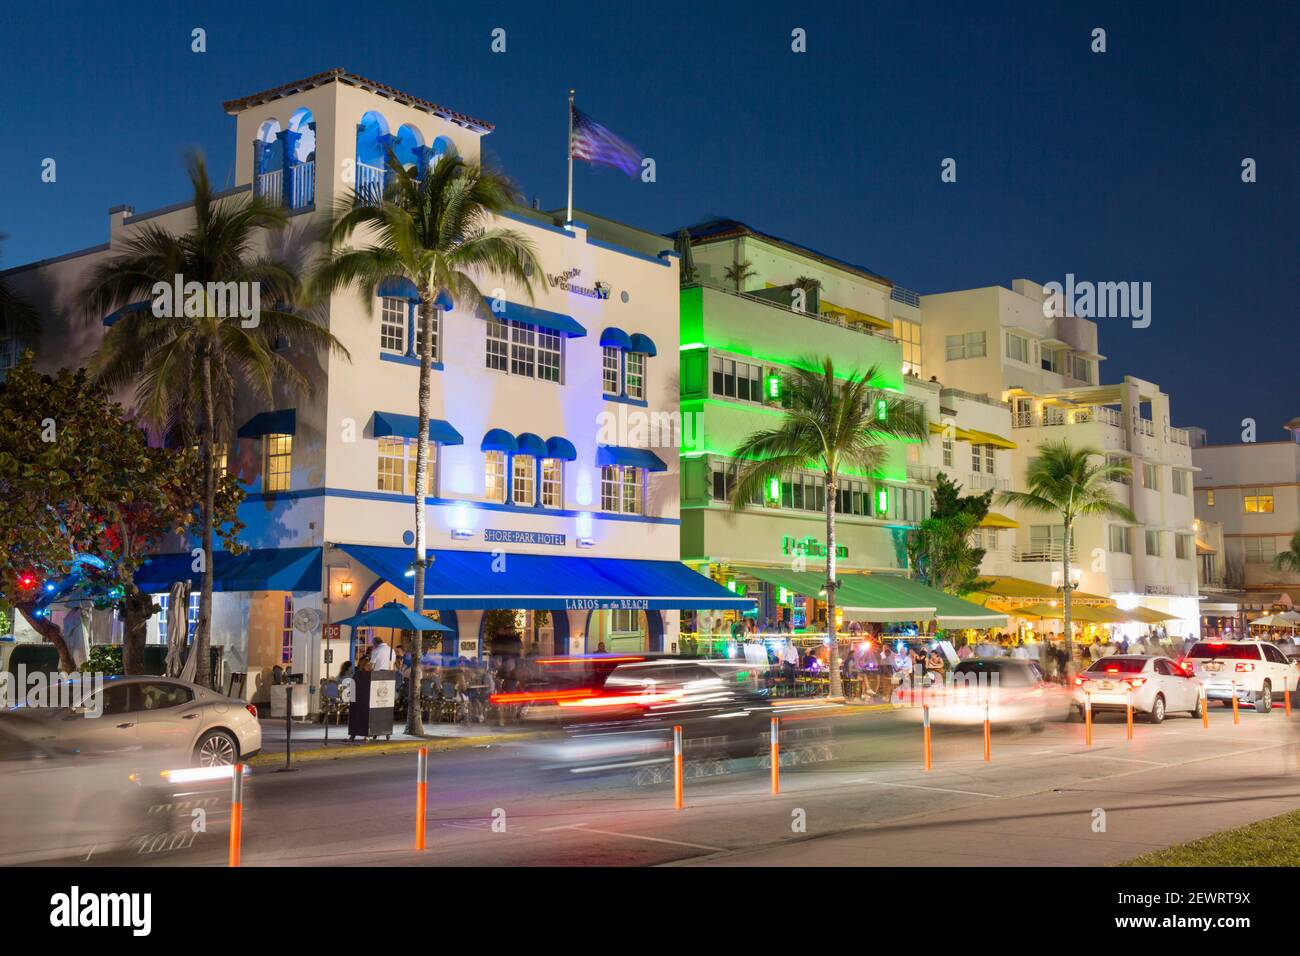 Façades colorées de l'hôtel illuminées la nuit, Ocean Drive, quartier historique art déco, South Beach, Miami Beach, Floride, États-Unis d'Amérique Banque D'Images